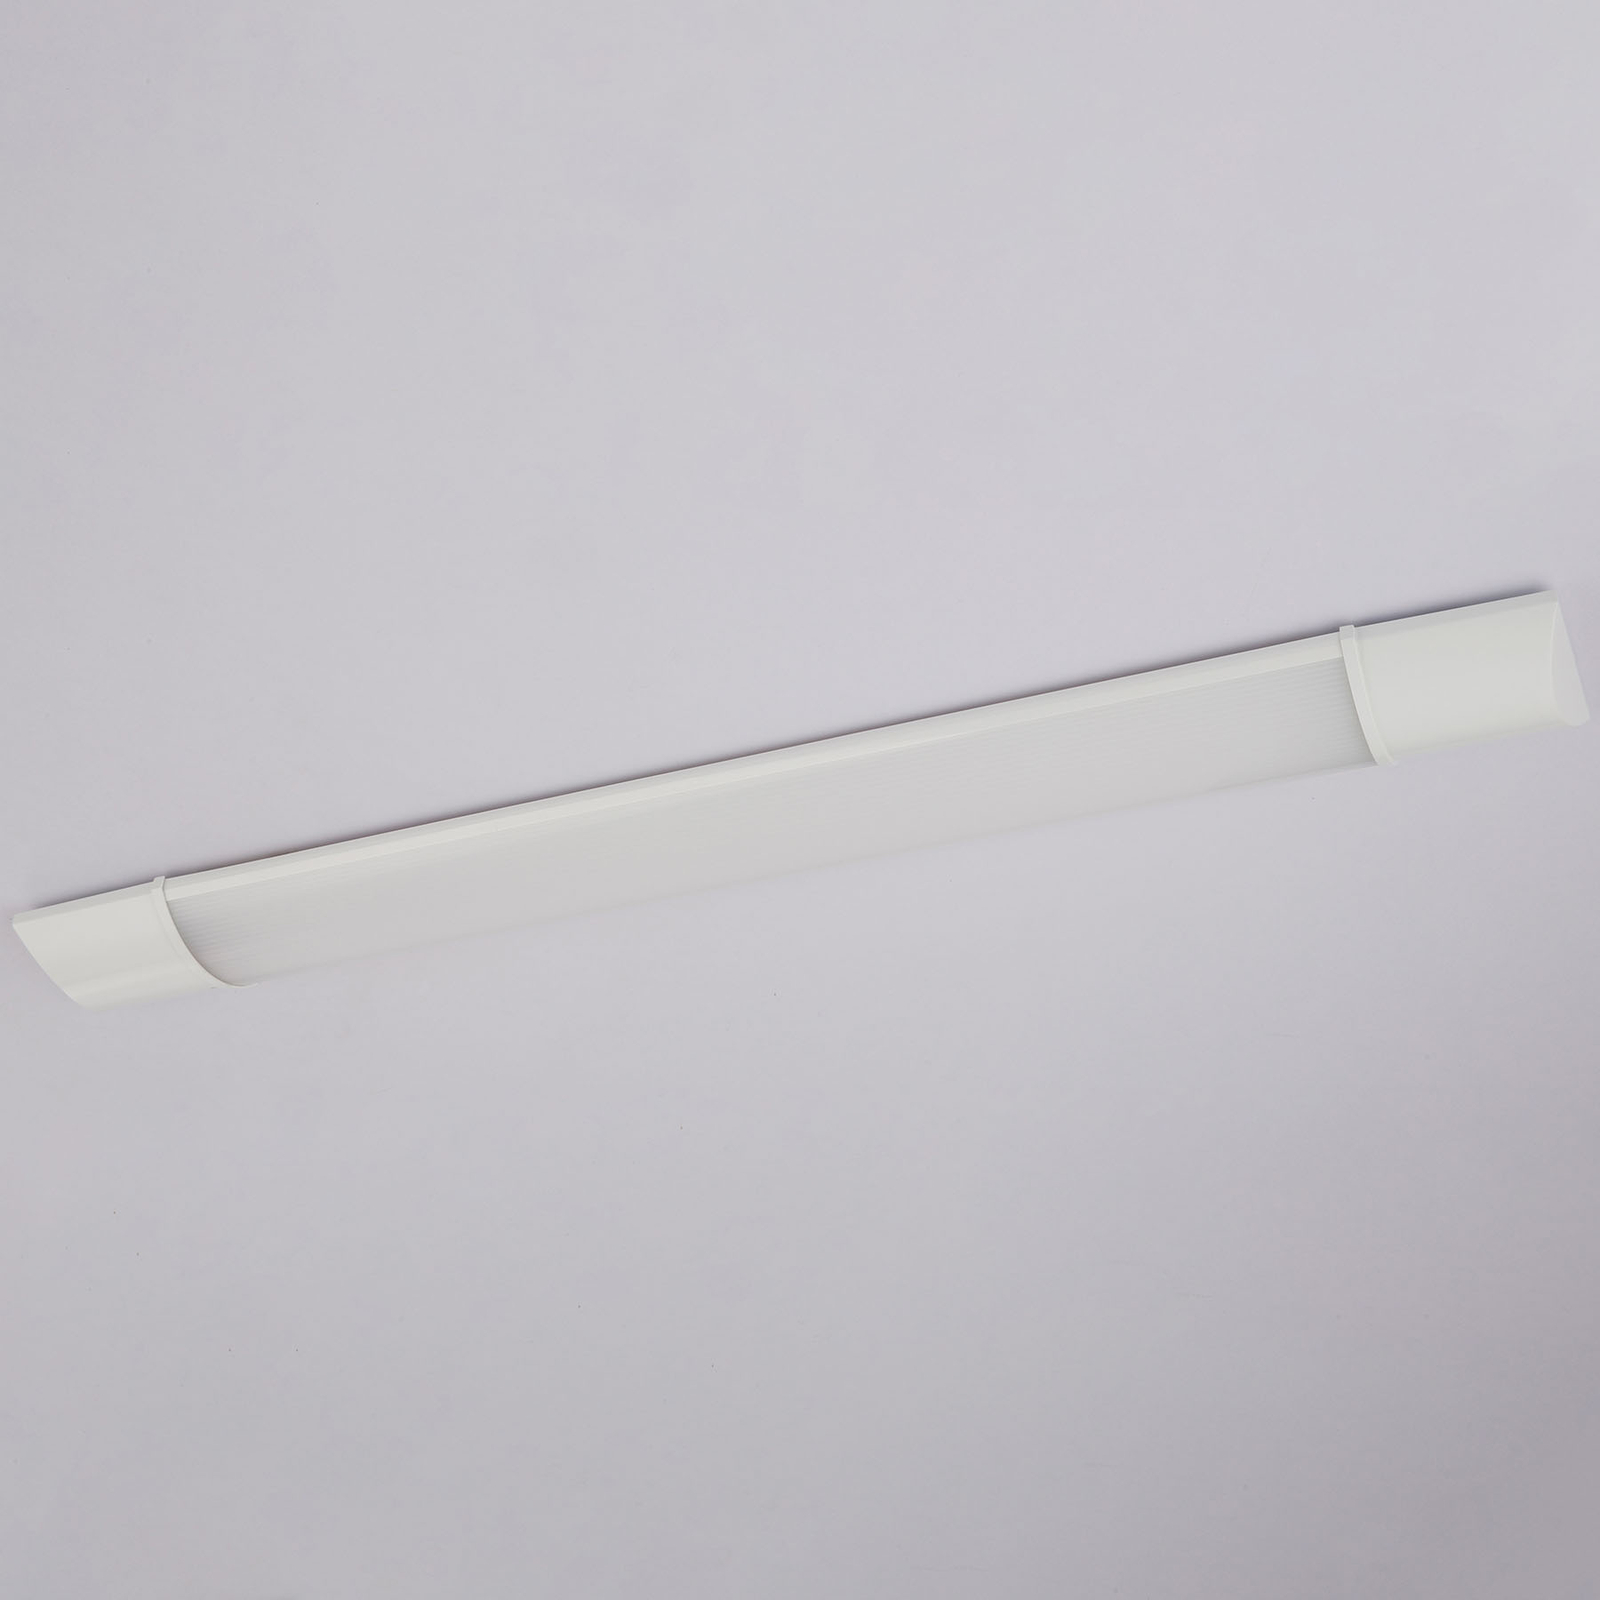 LED osvětlení pod skříňku Obara, IP20, délka 60 cm